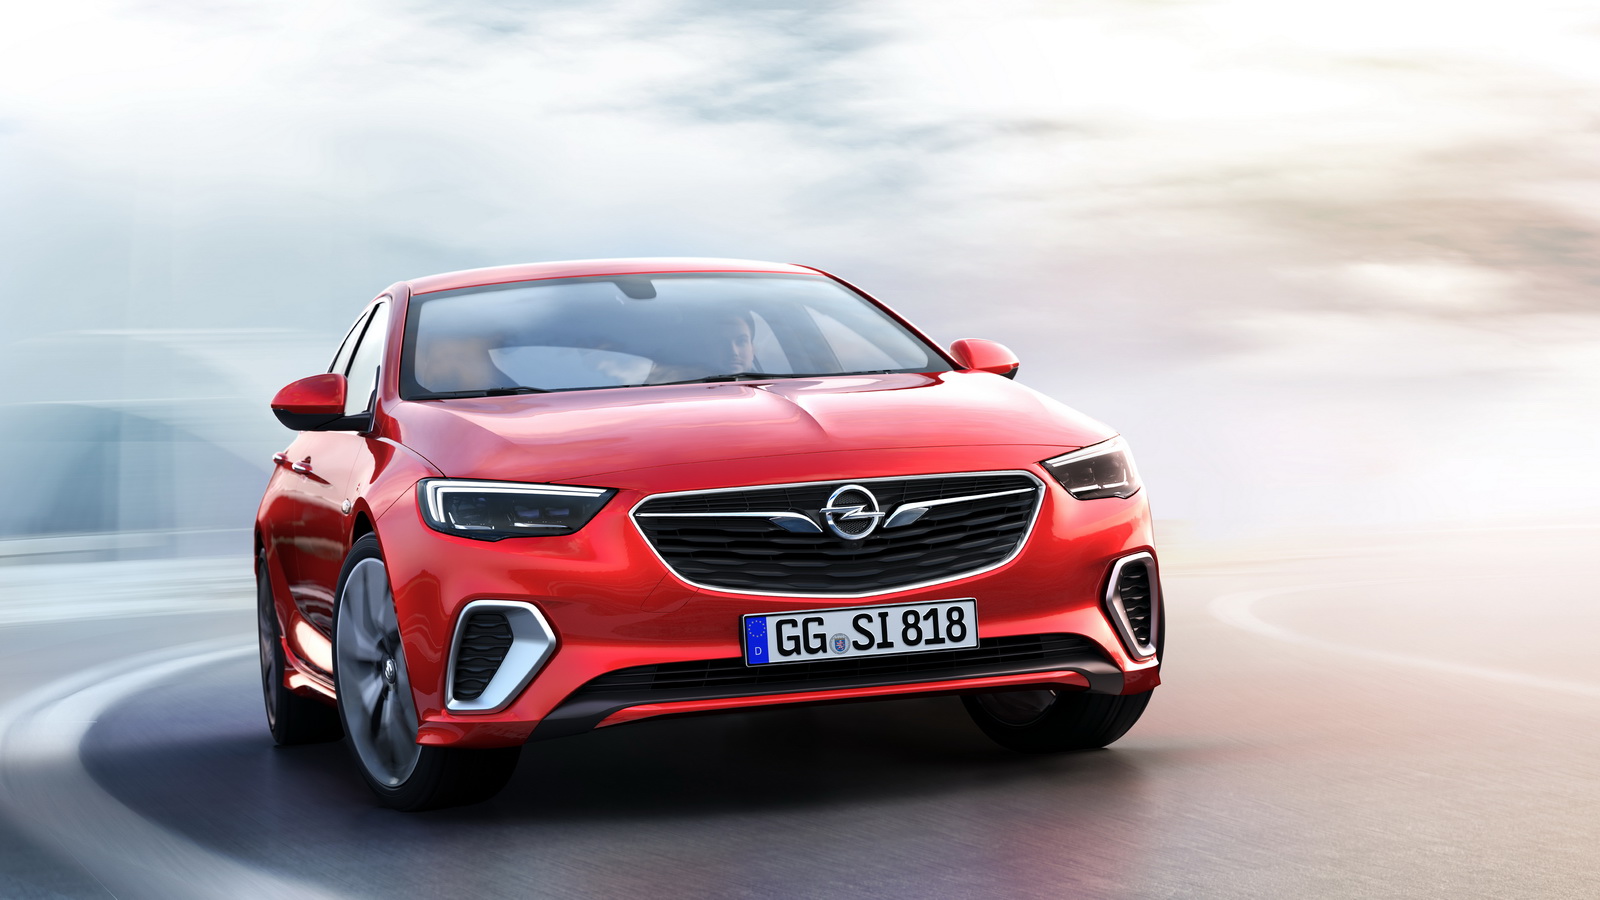  Yeni Opel Insignia GSi resim galerisi